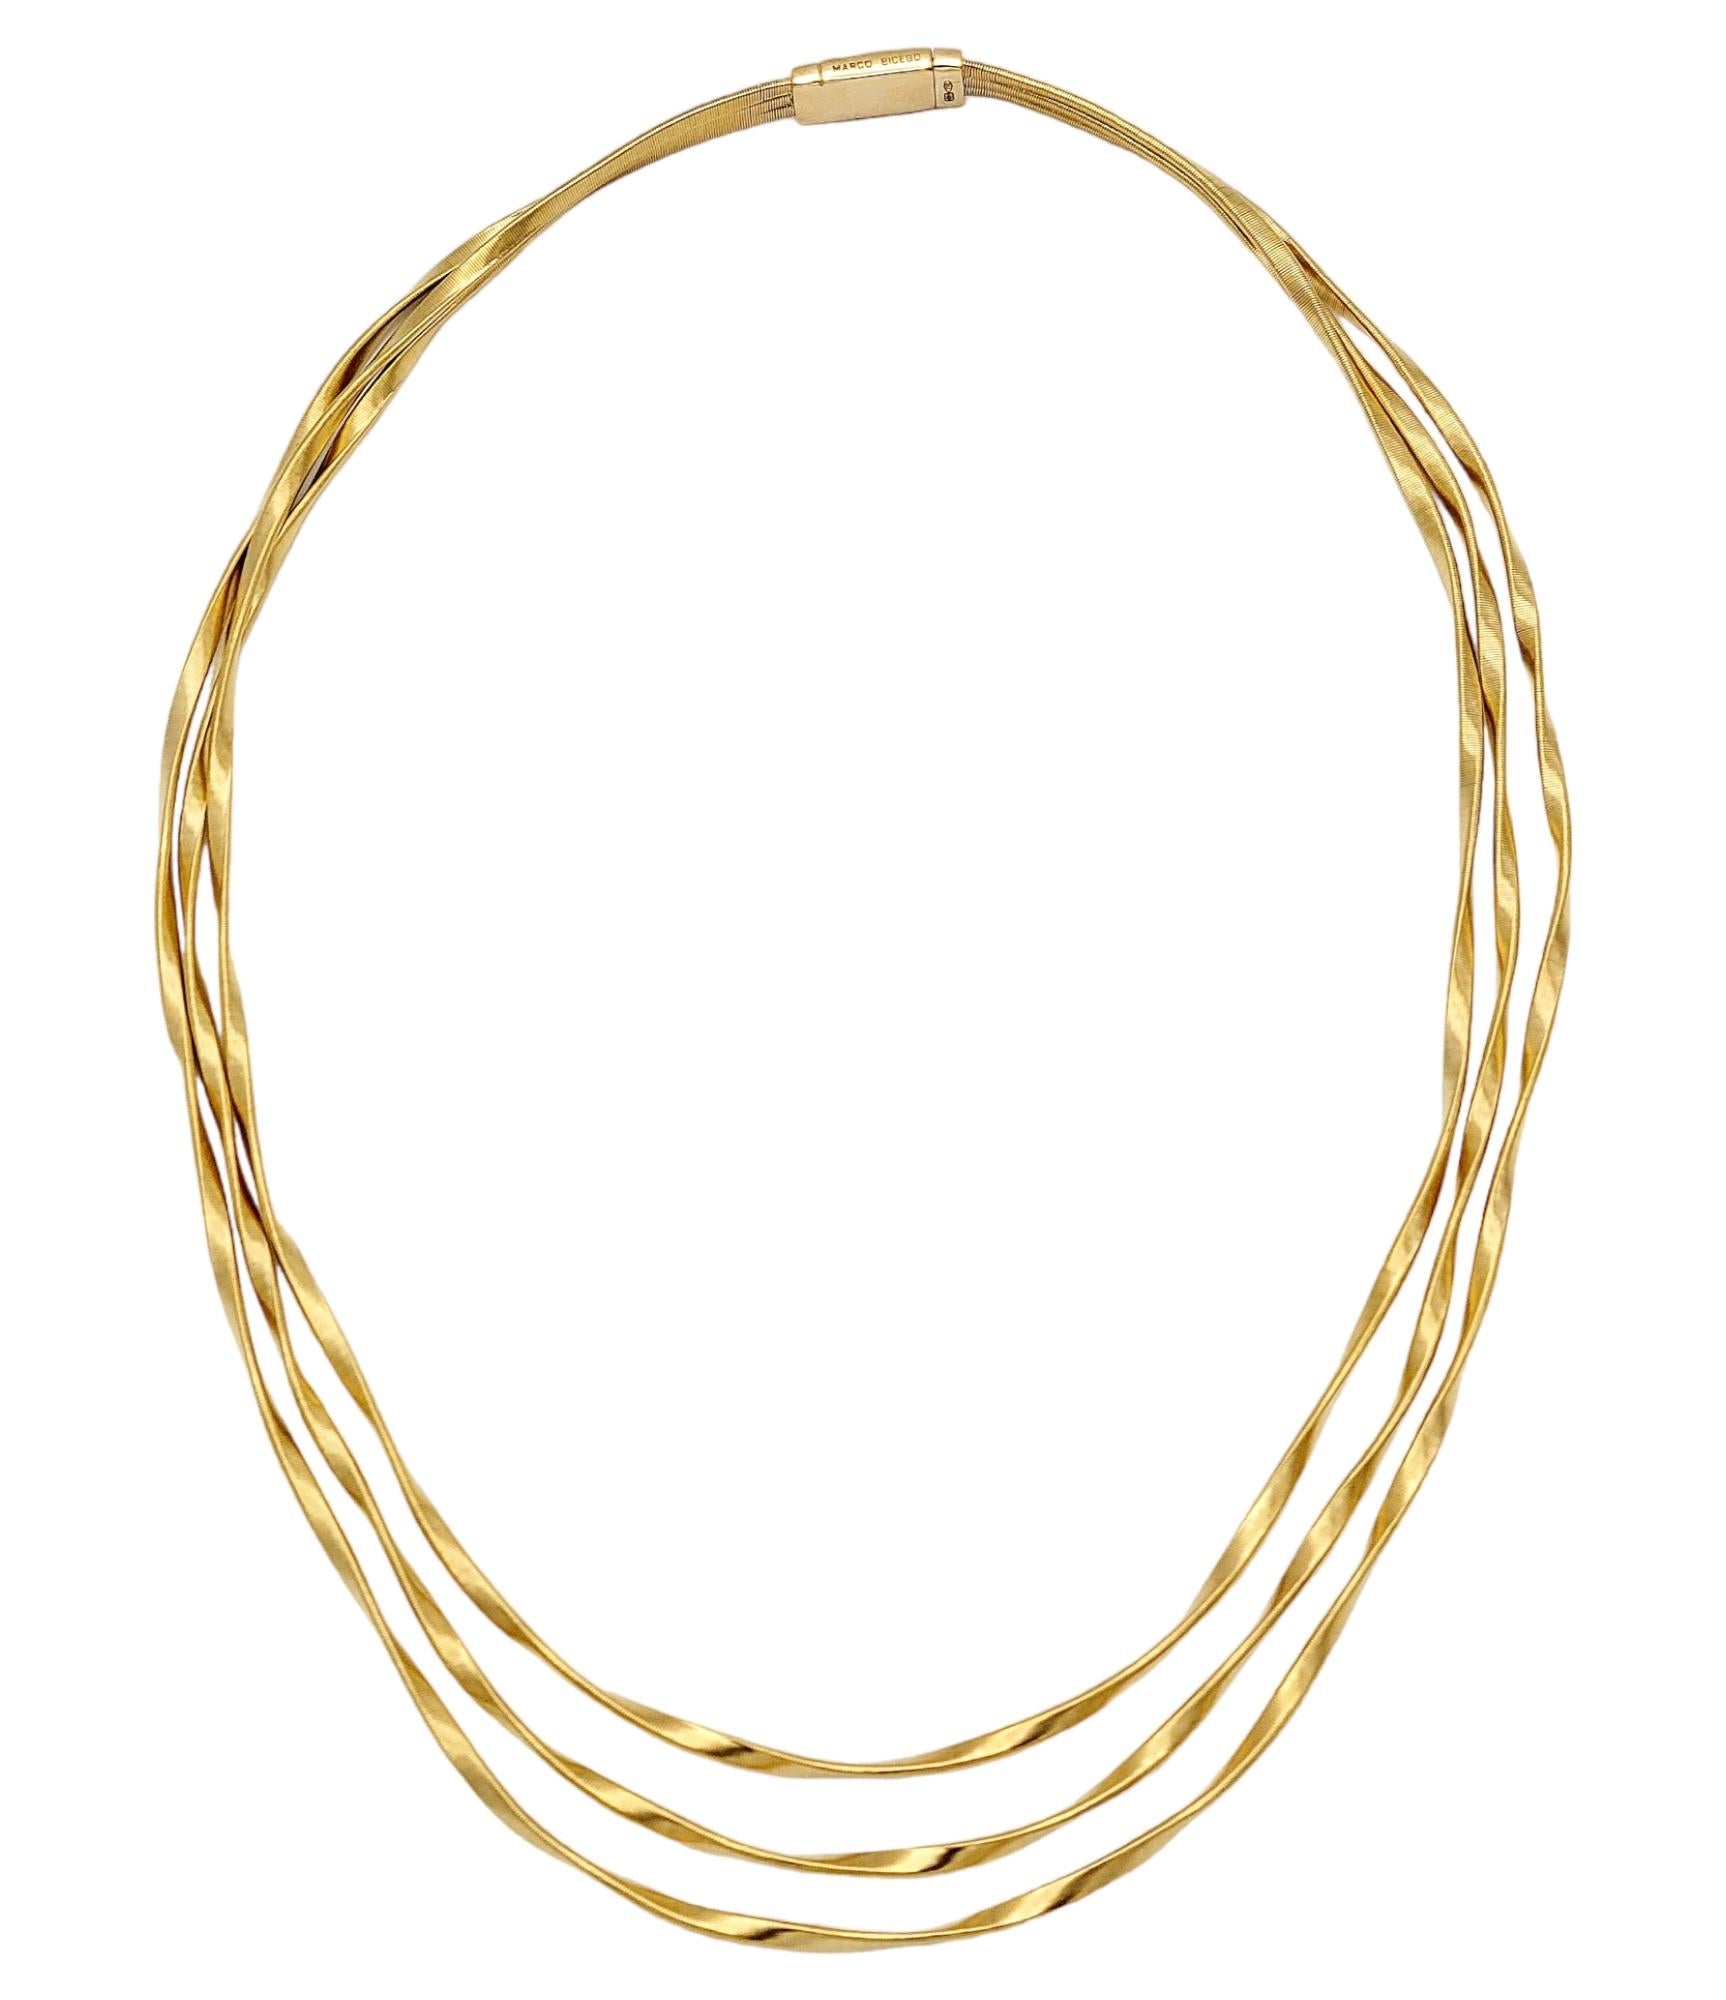 marco bicego marrakech necklace